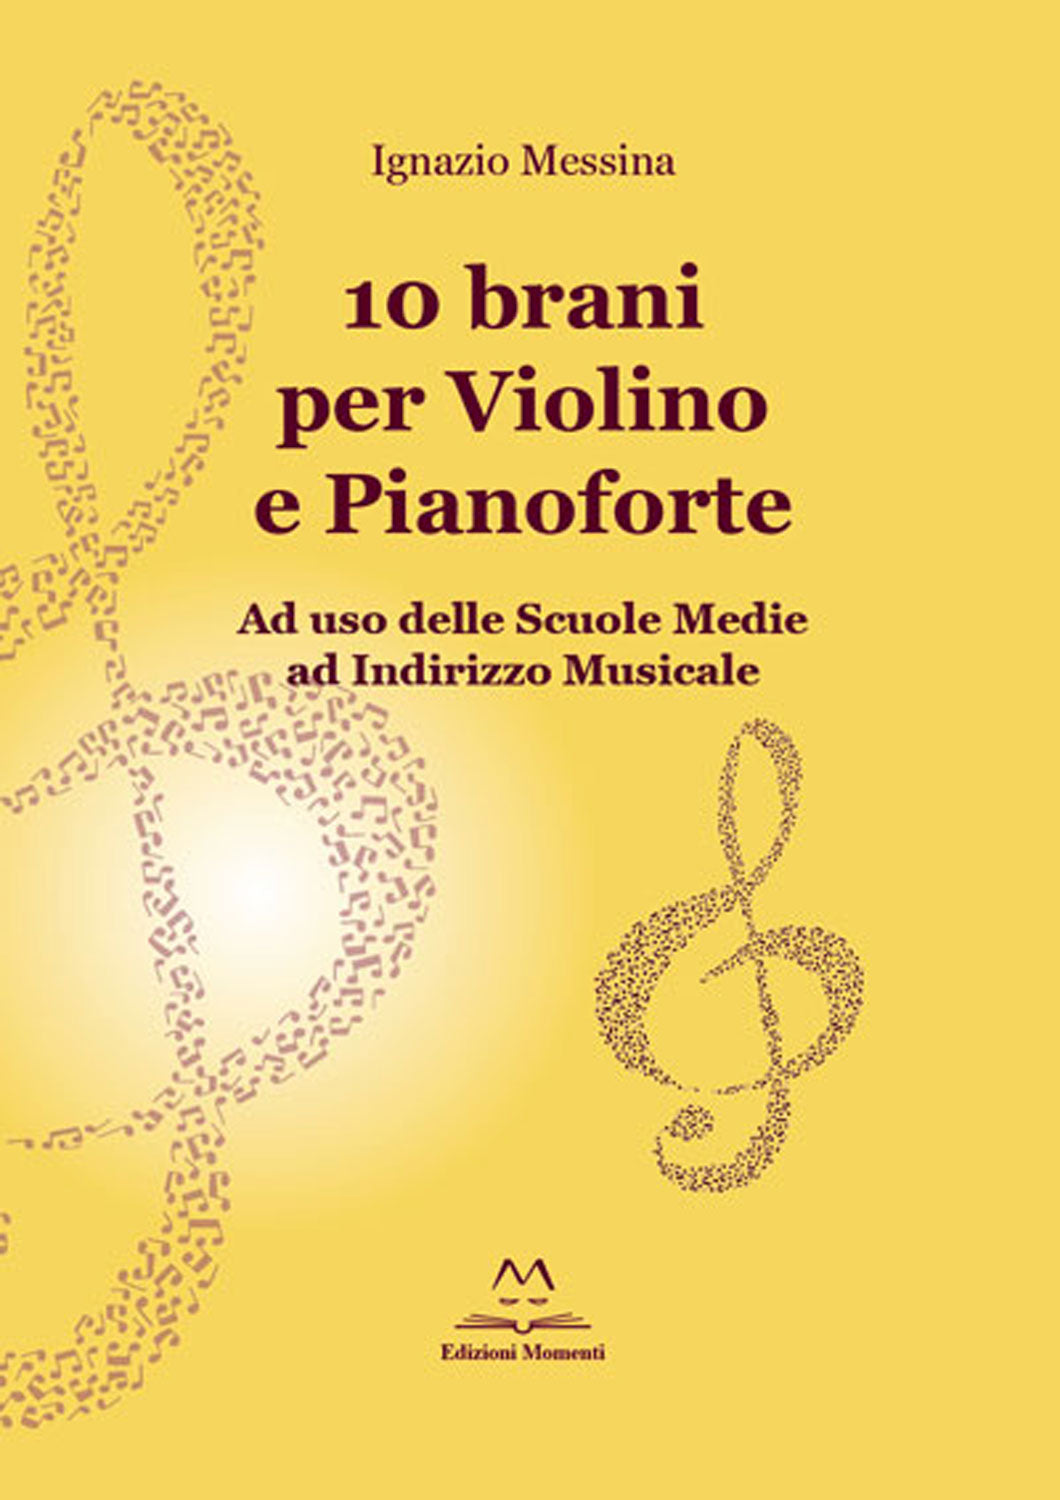 10 brani per violino e pianoforte di Ignazio Messina